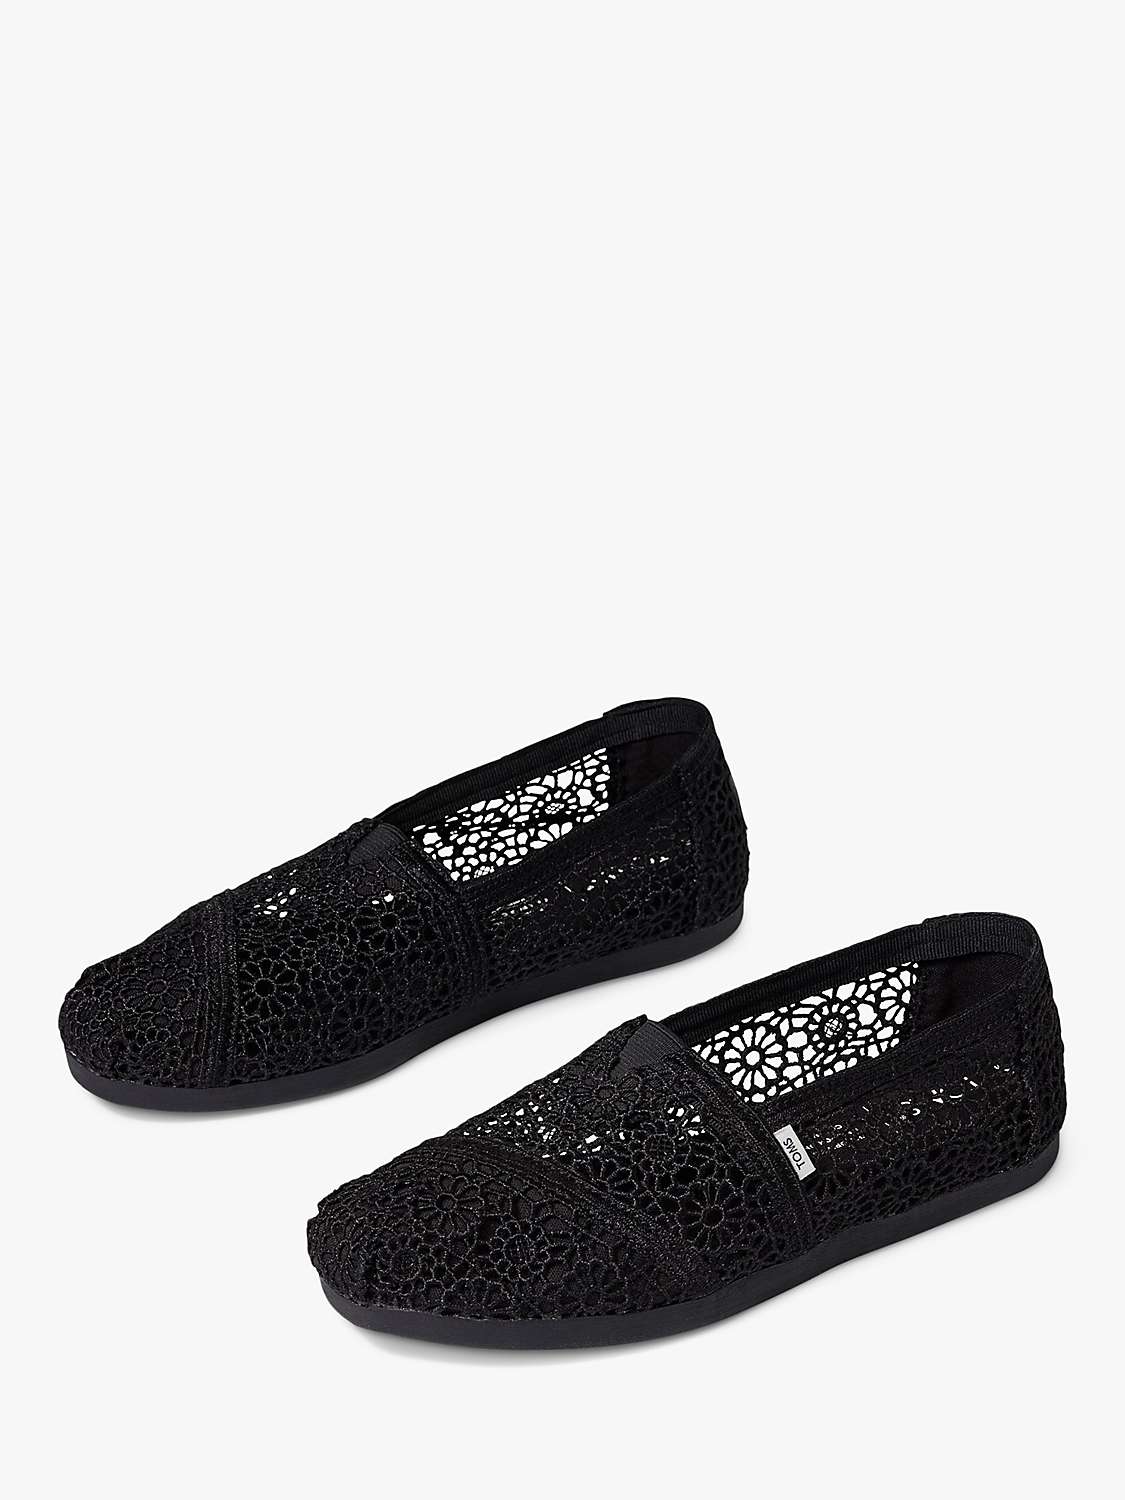 Buy TOMS Alpargata Crochet Espadrille Shoes Online at johnlewis.com